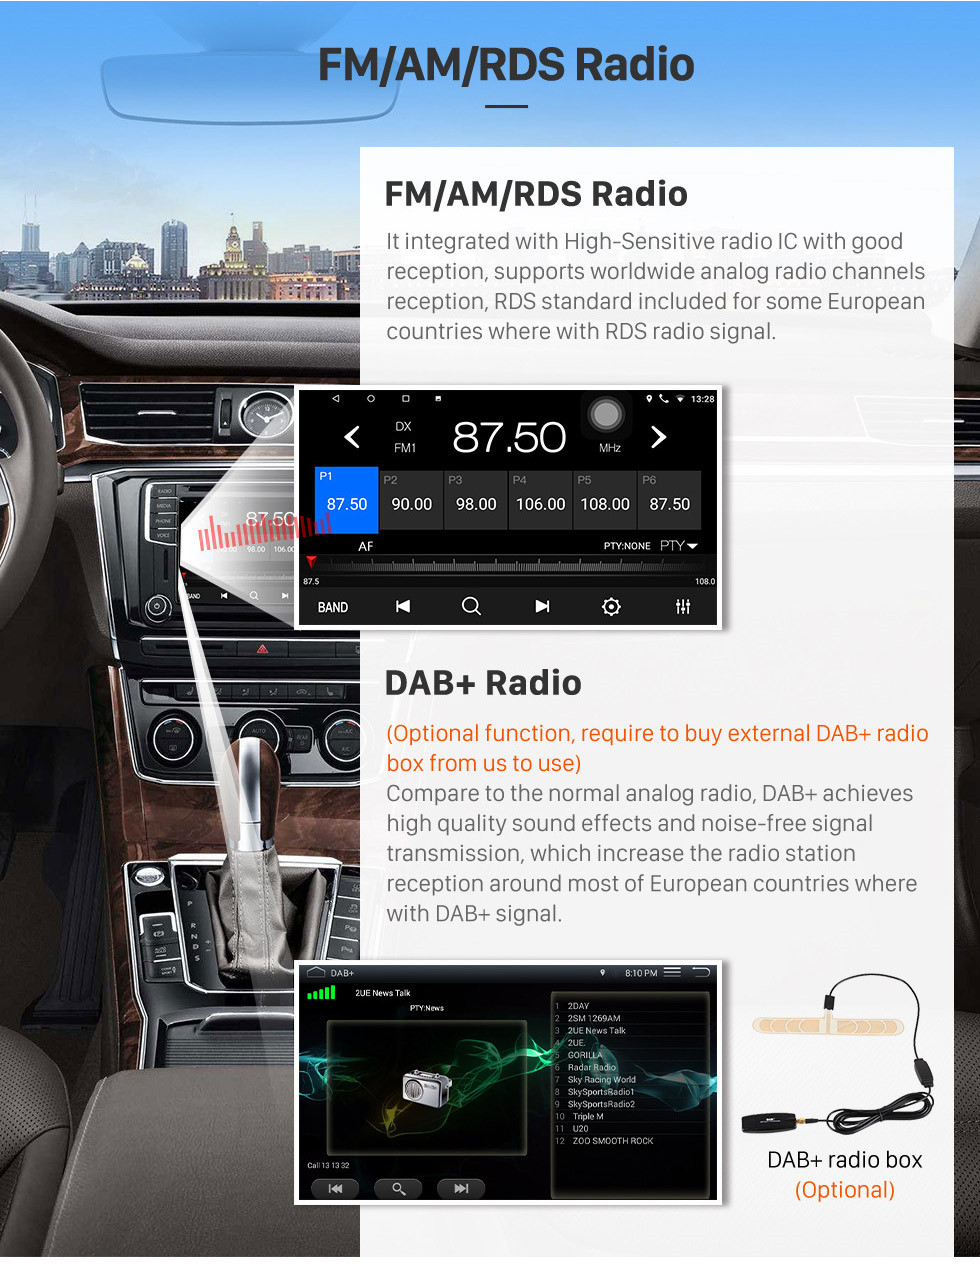 Seicane 9 polegadas Android 13.0 Para 2016 Toyota Prius Stereo GPS sistema de navegação com Bluetooth OBD2 DVR HD tela sensível ao toque câmera retrovisor